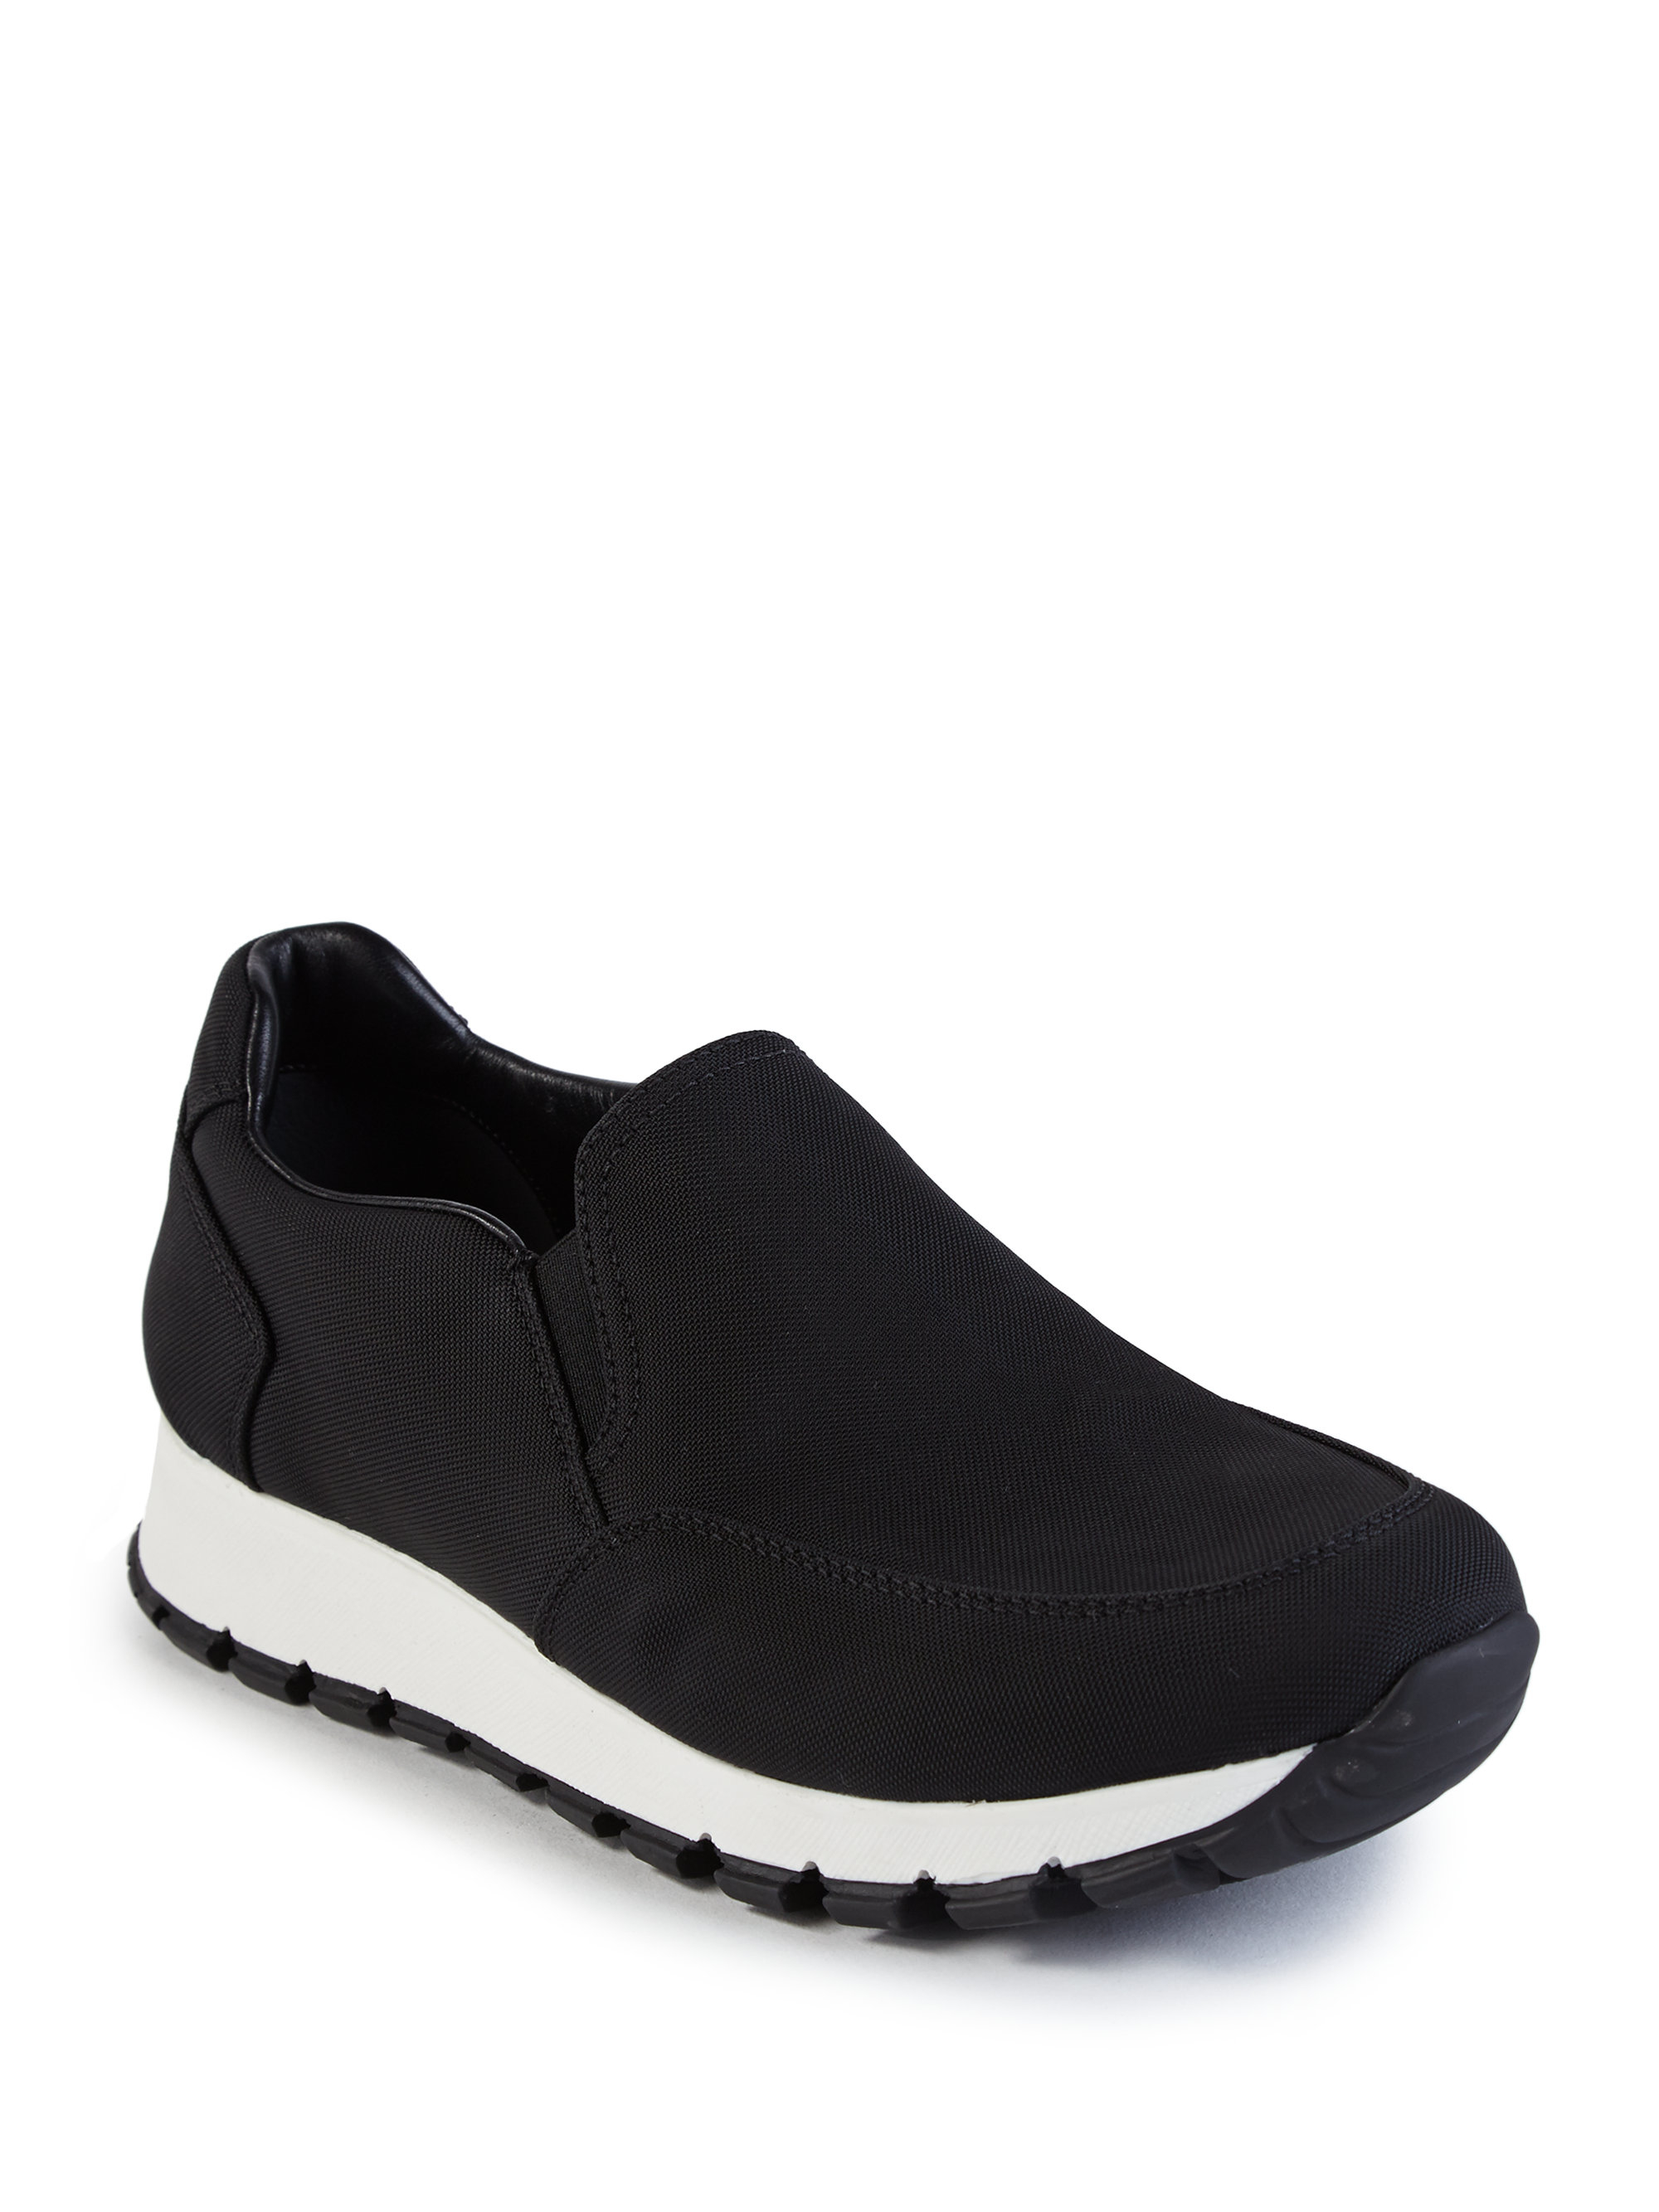 Prada Nylon Slip-on Sneakers in Black